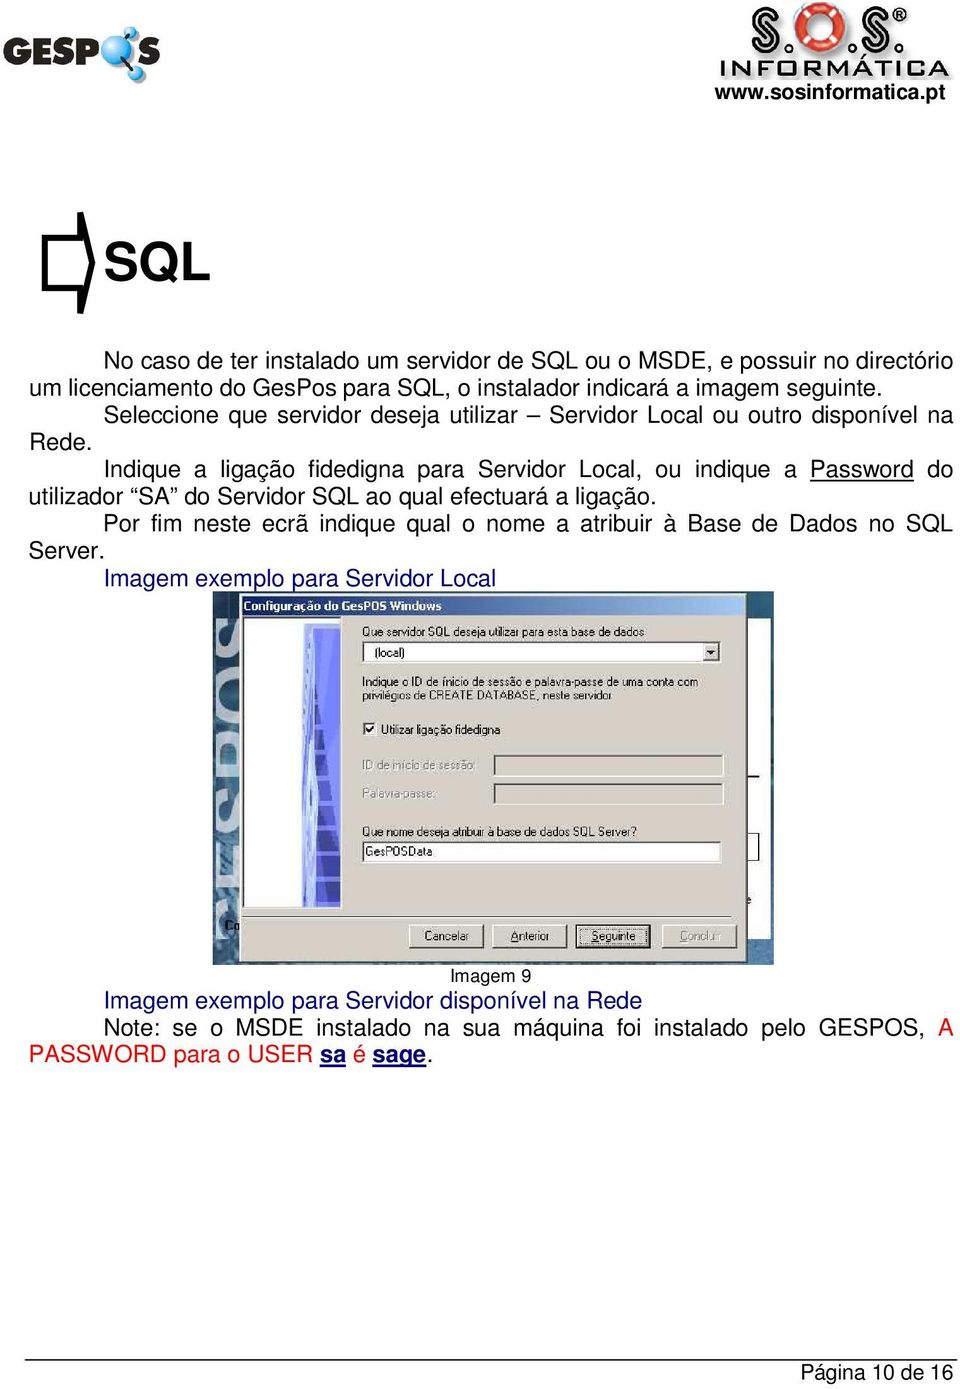 Indique a ligação fidedigna para Servidor Local, ou indique a Password do utilizador SA do Servidor SQL ao qual efectuará a ligação.